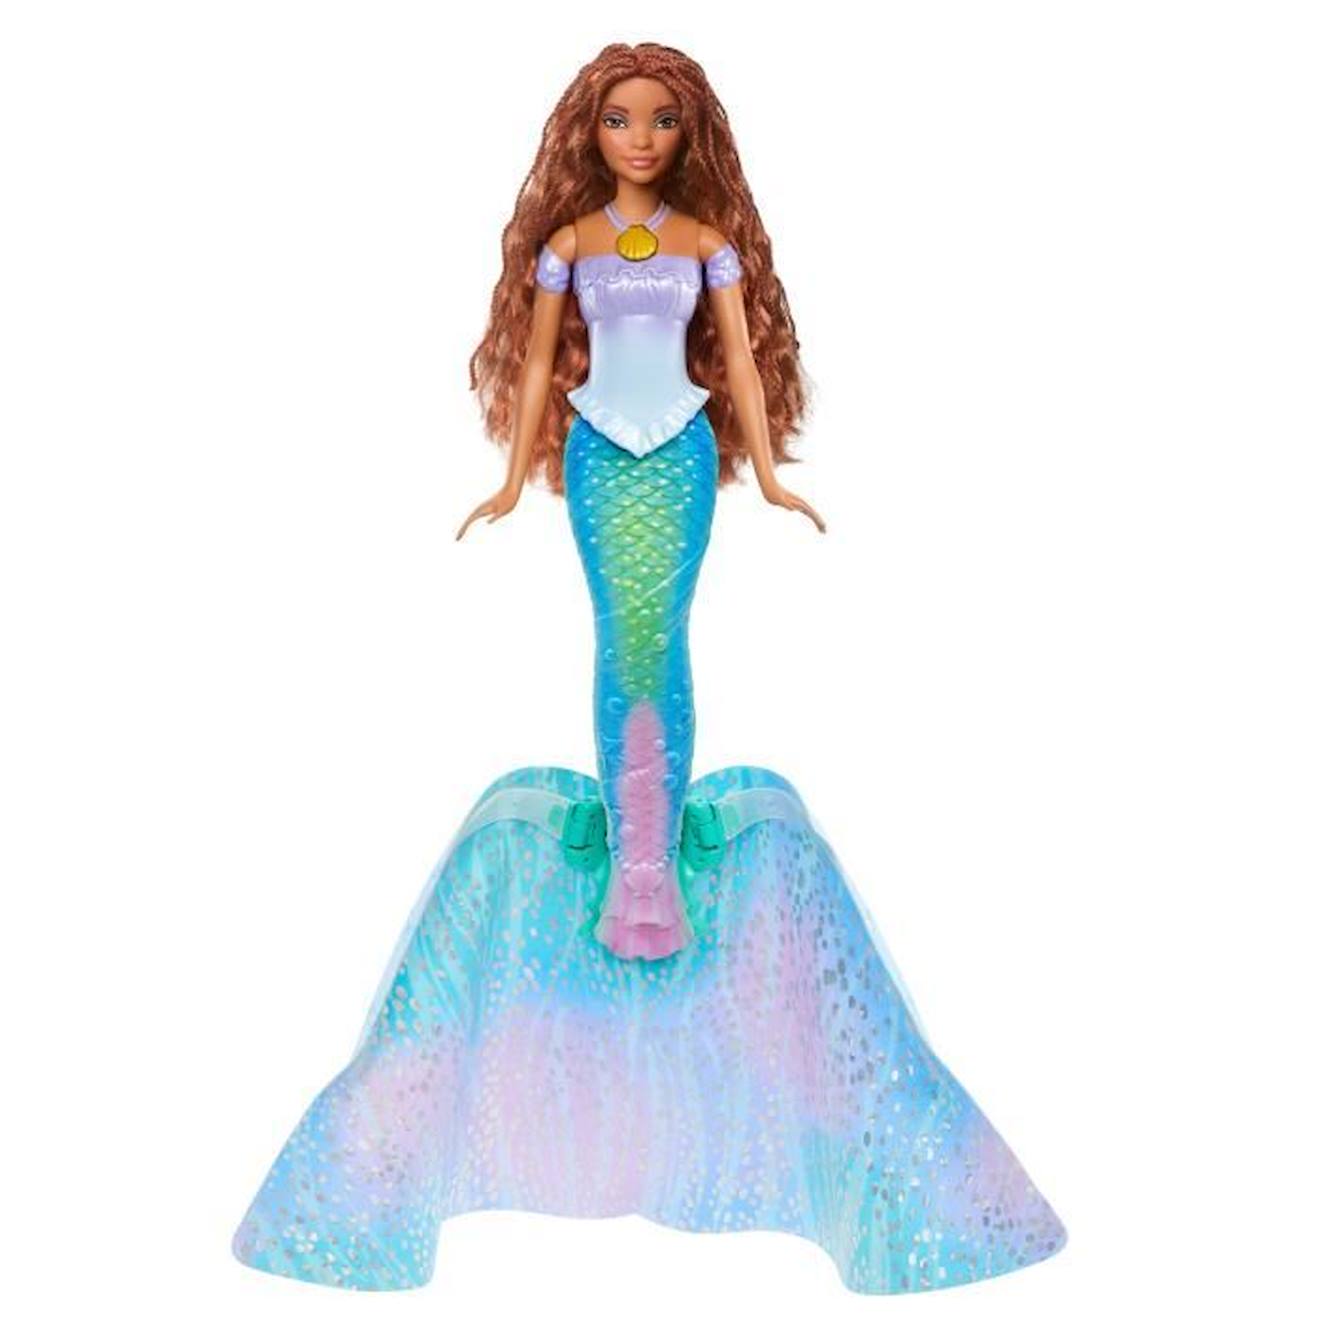 Poupee Ariel 2 En 1 - Mattel - Hlx13 - Poupee Mannequin Disney Bleu